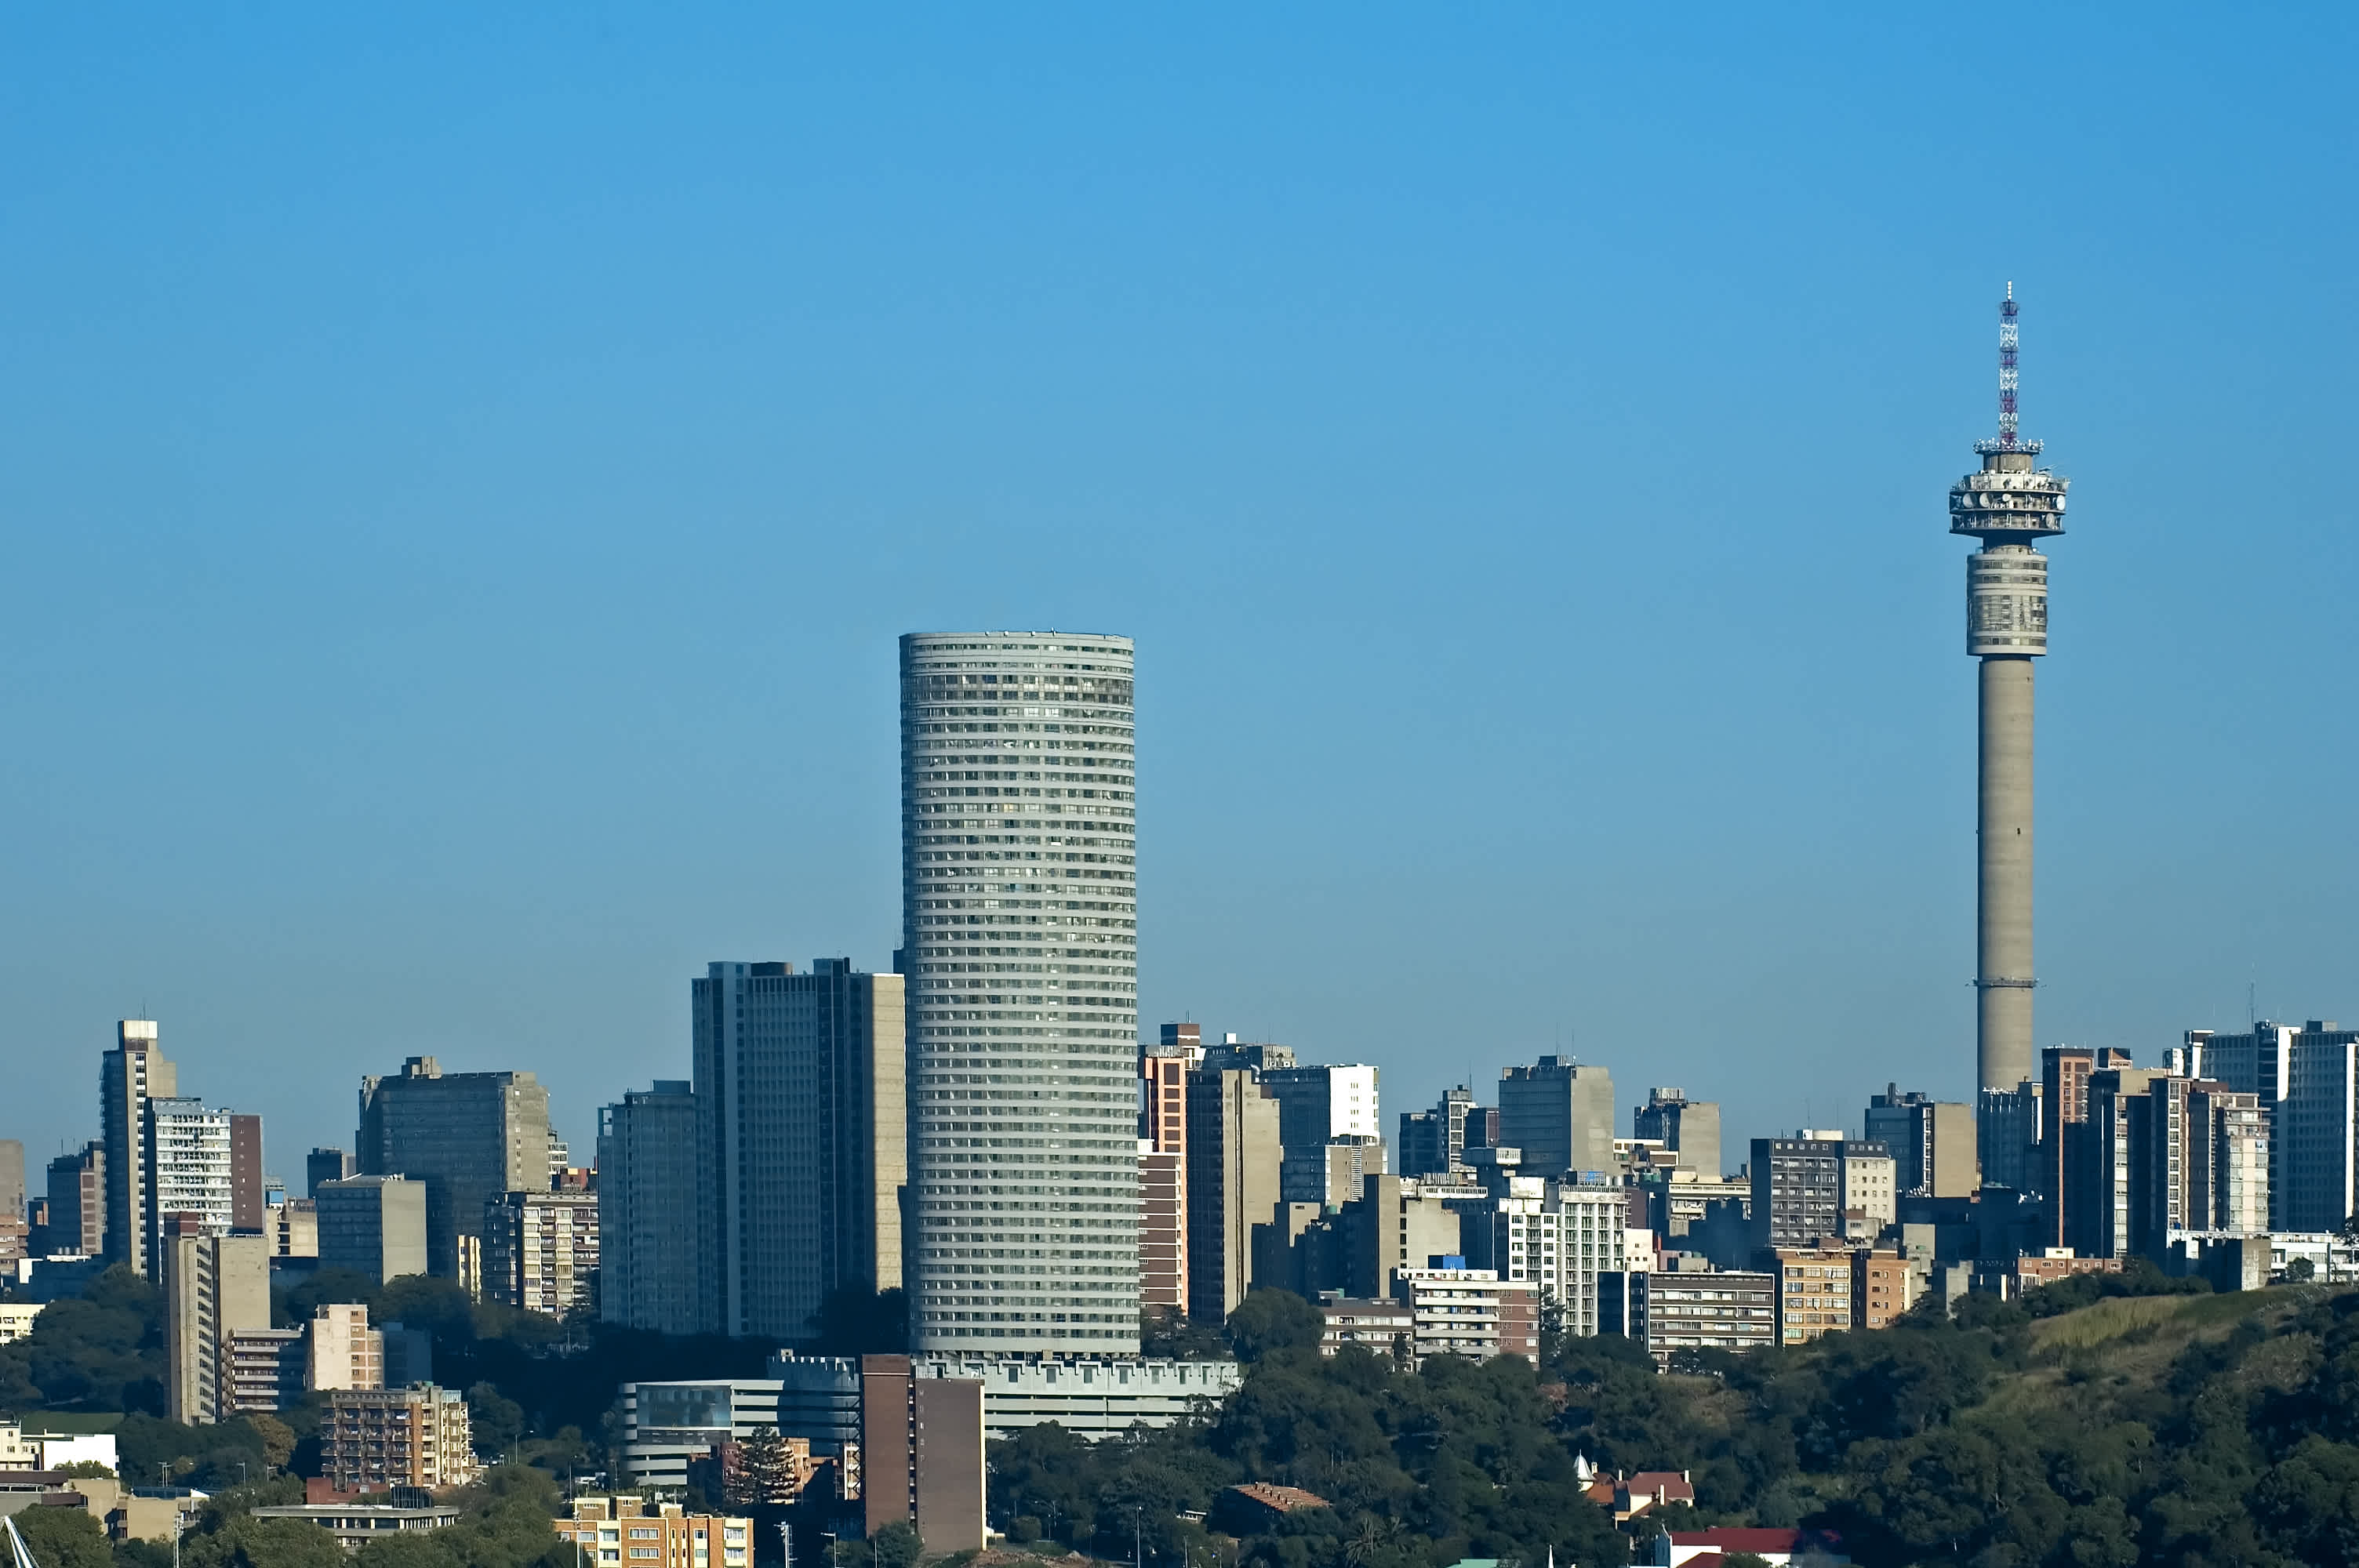 Een zuidelijk uitzicht op Johannesburg over Doornfontein met hoge gebouwen en toren.